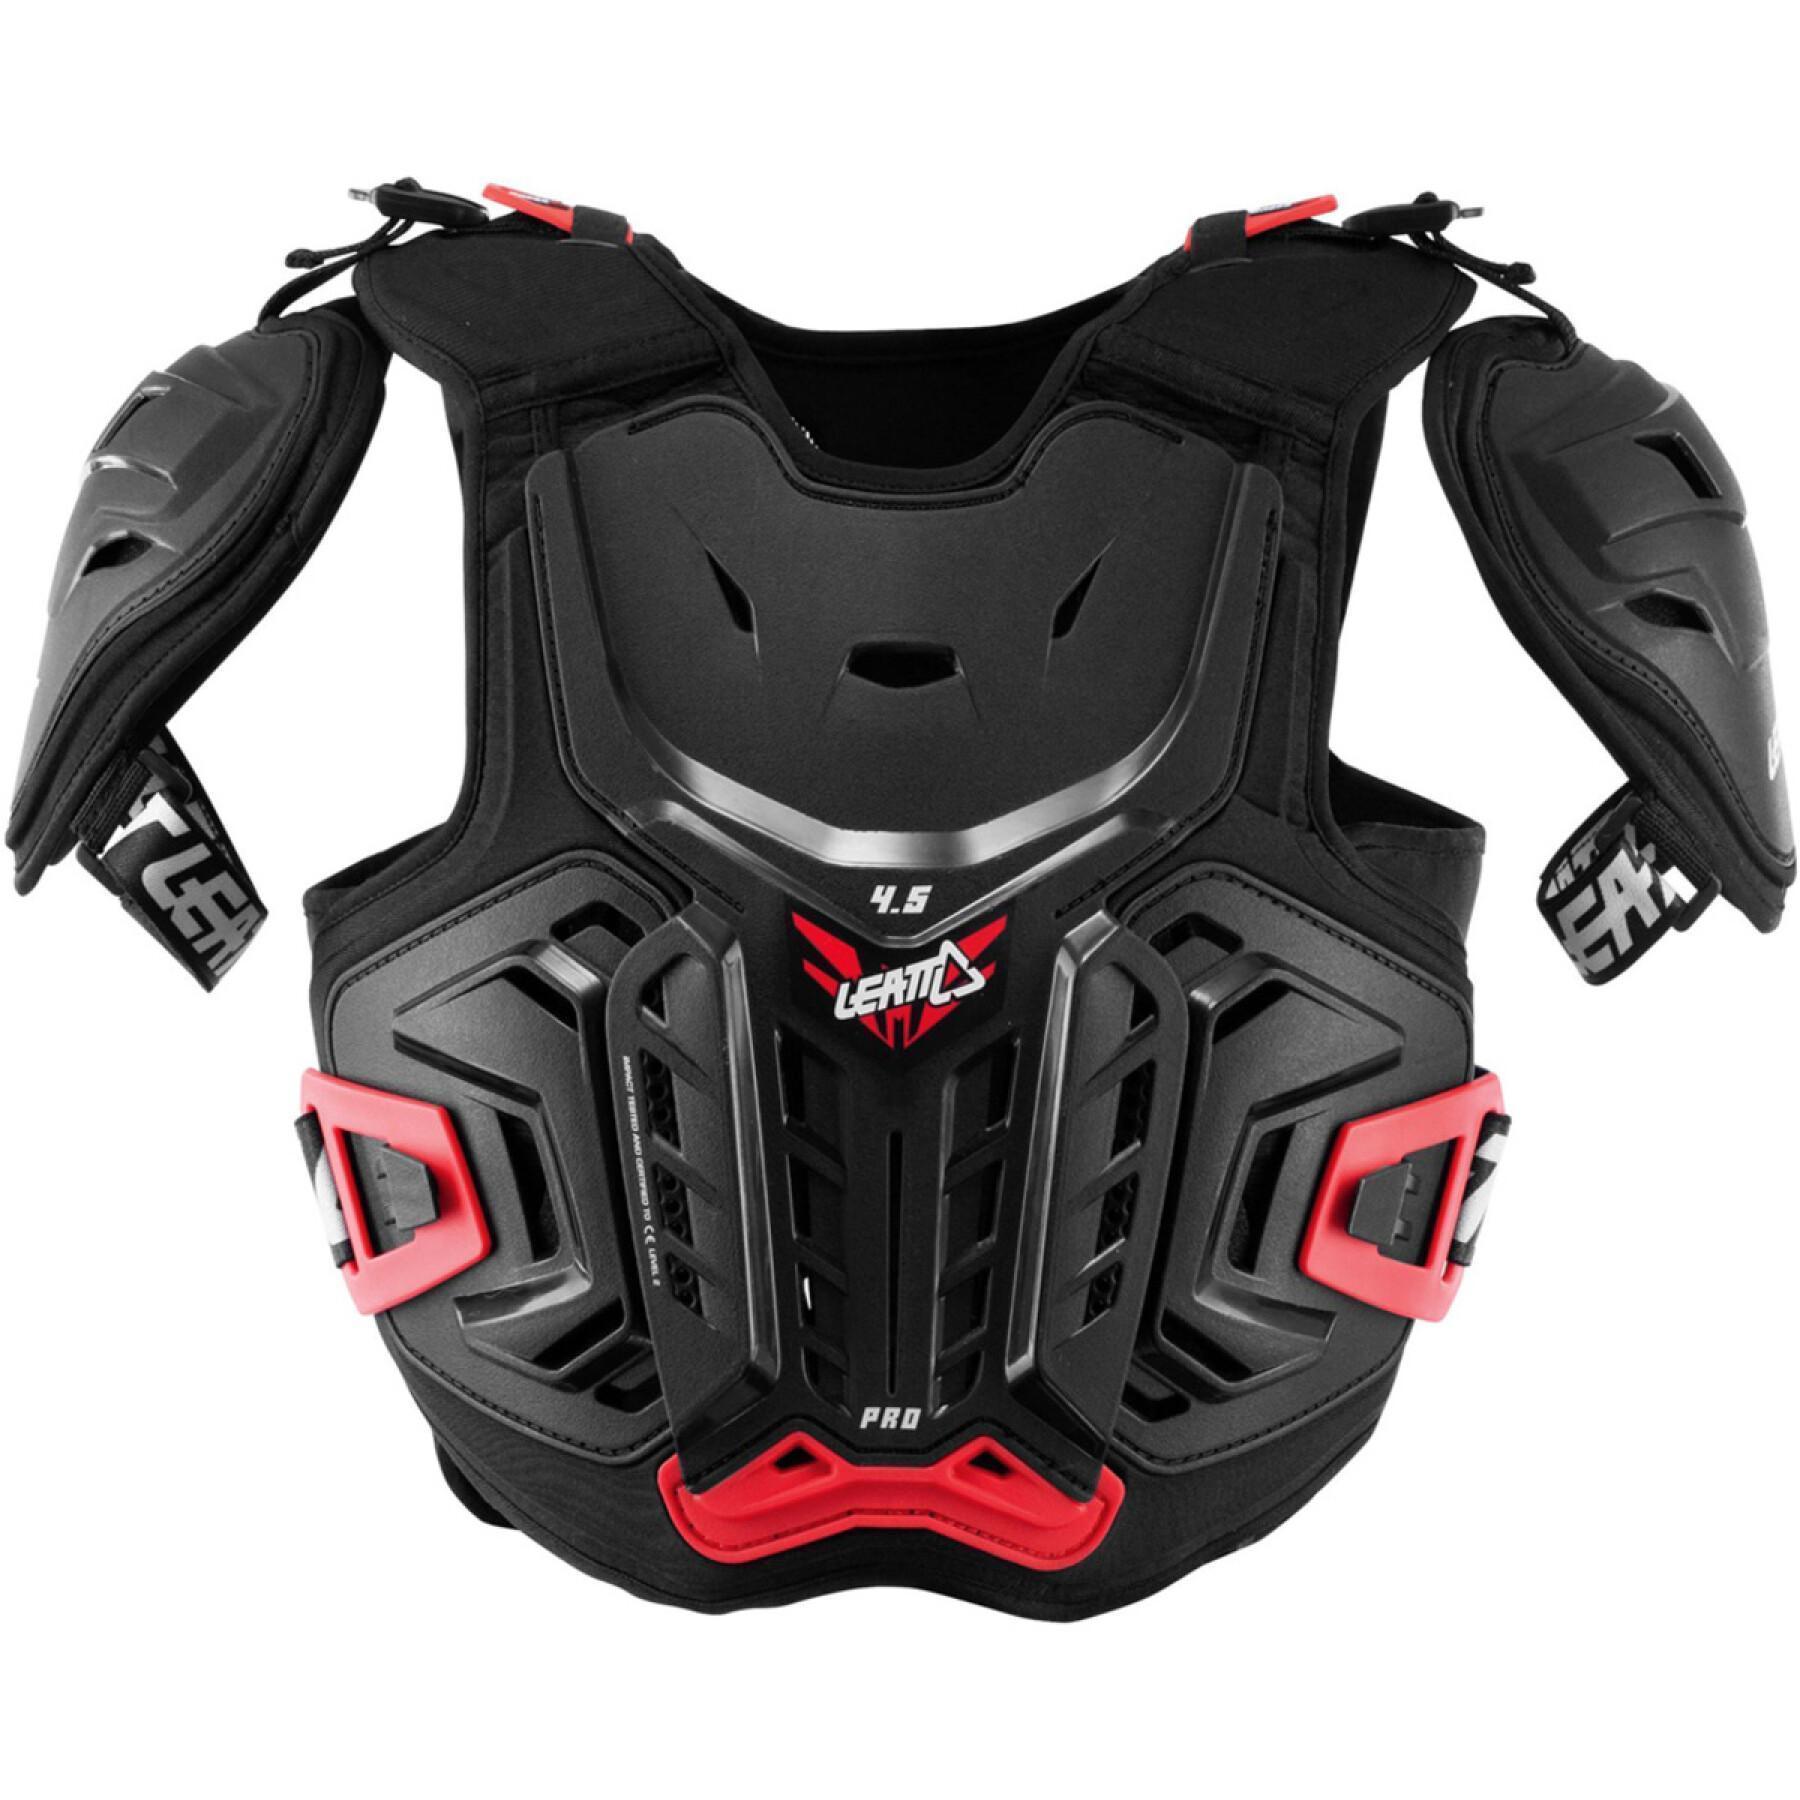 Protector pectoral de moto para niños Leatt cuirasse 4.5 Pro